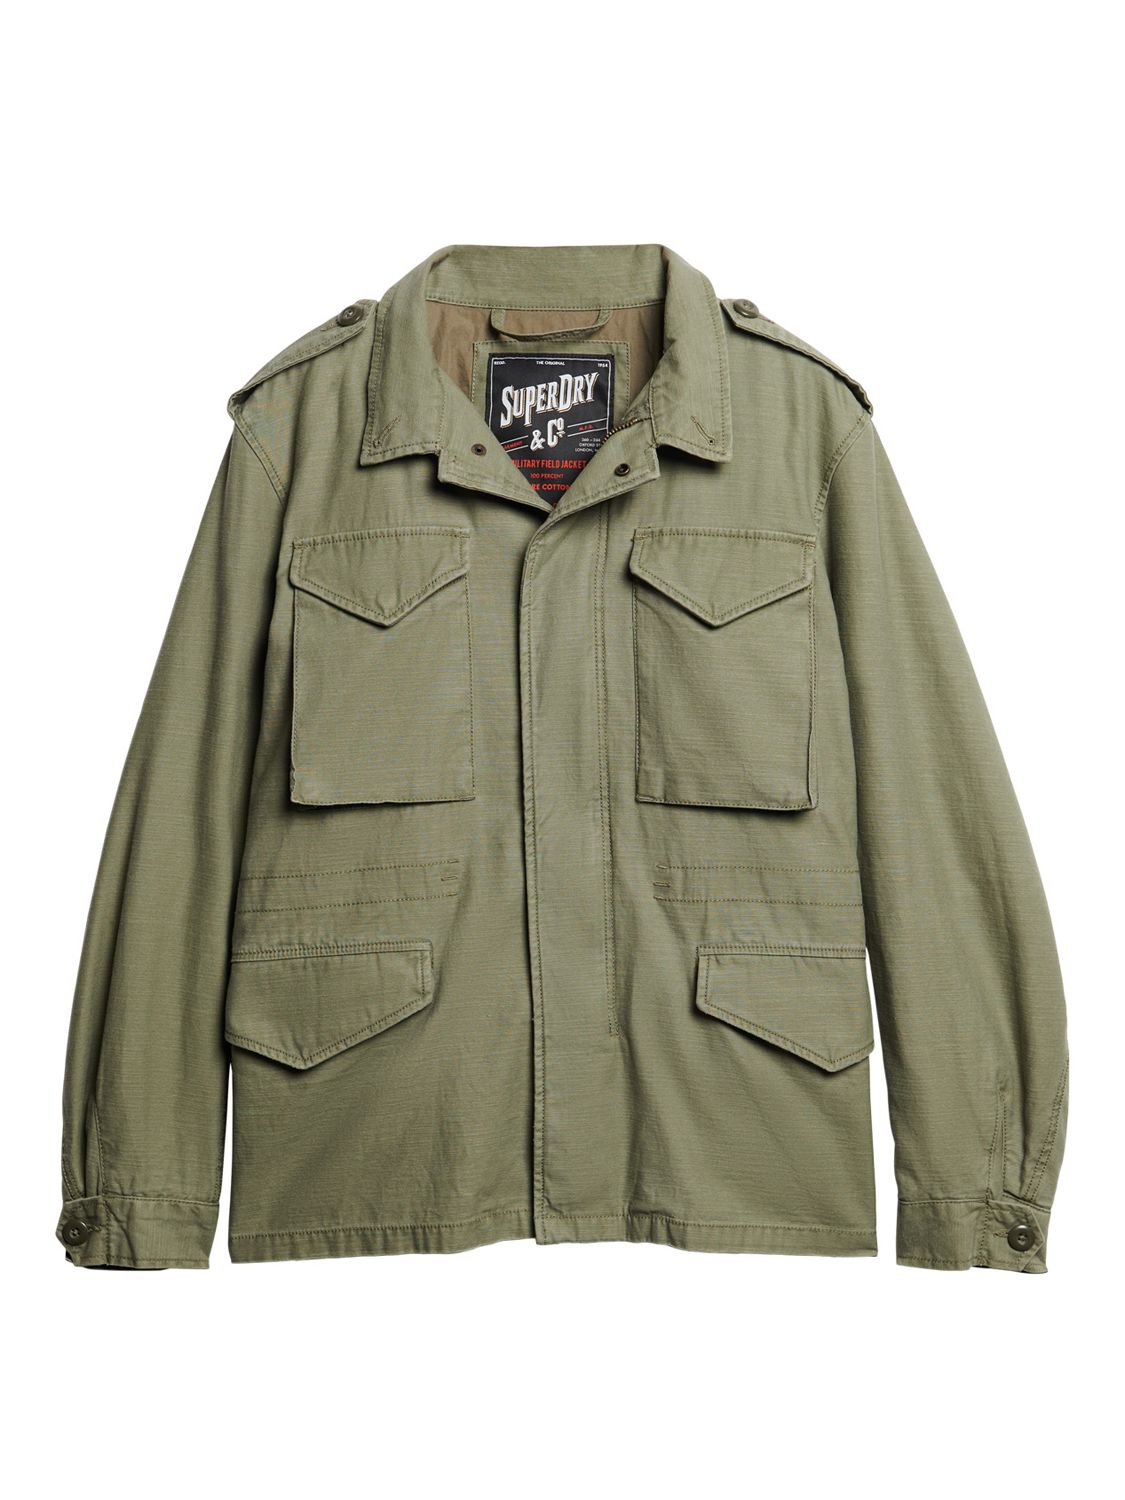 Superdry Merchant Field Cotton Jacket, Burnt Olive, XXXL